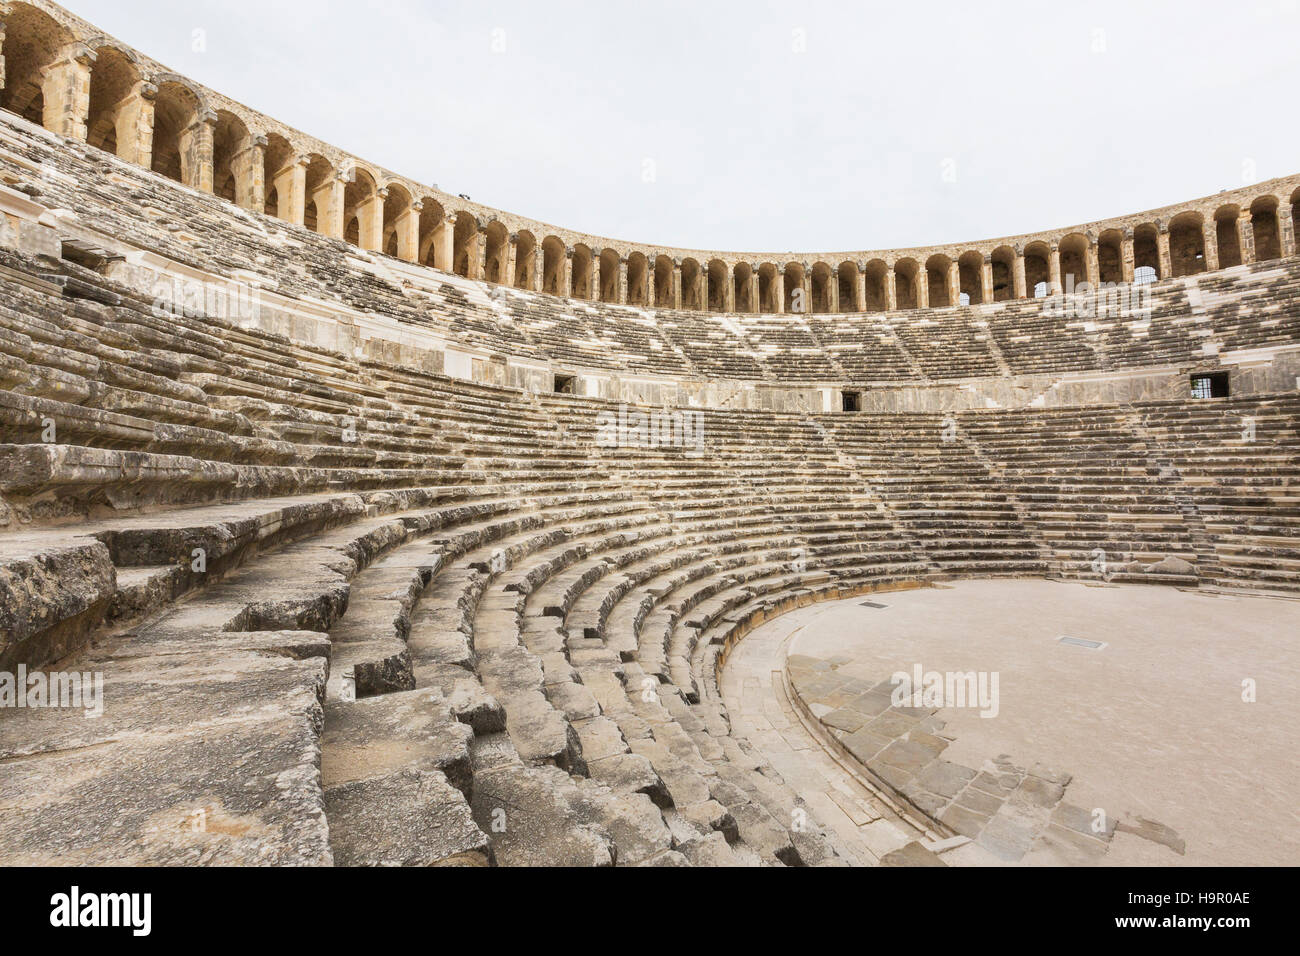 Roman amphitheater at Aspendos, Turkey. Stock Photo